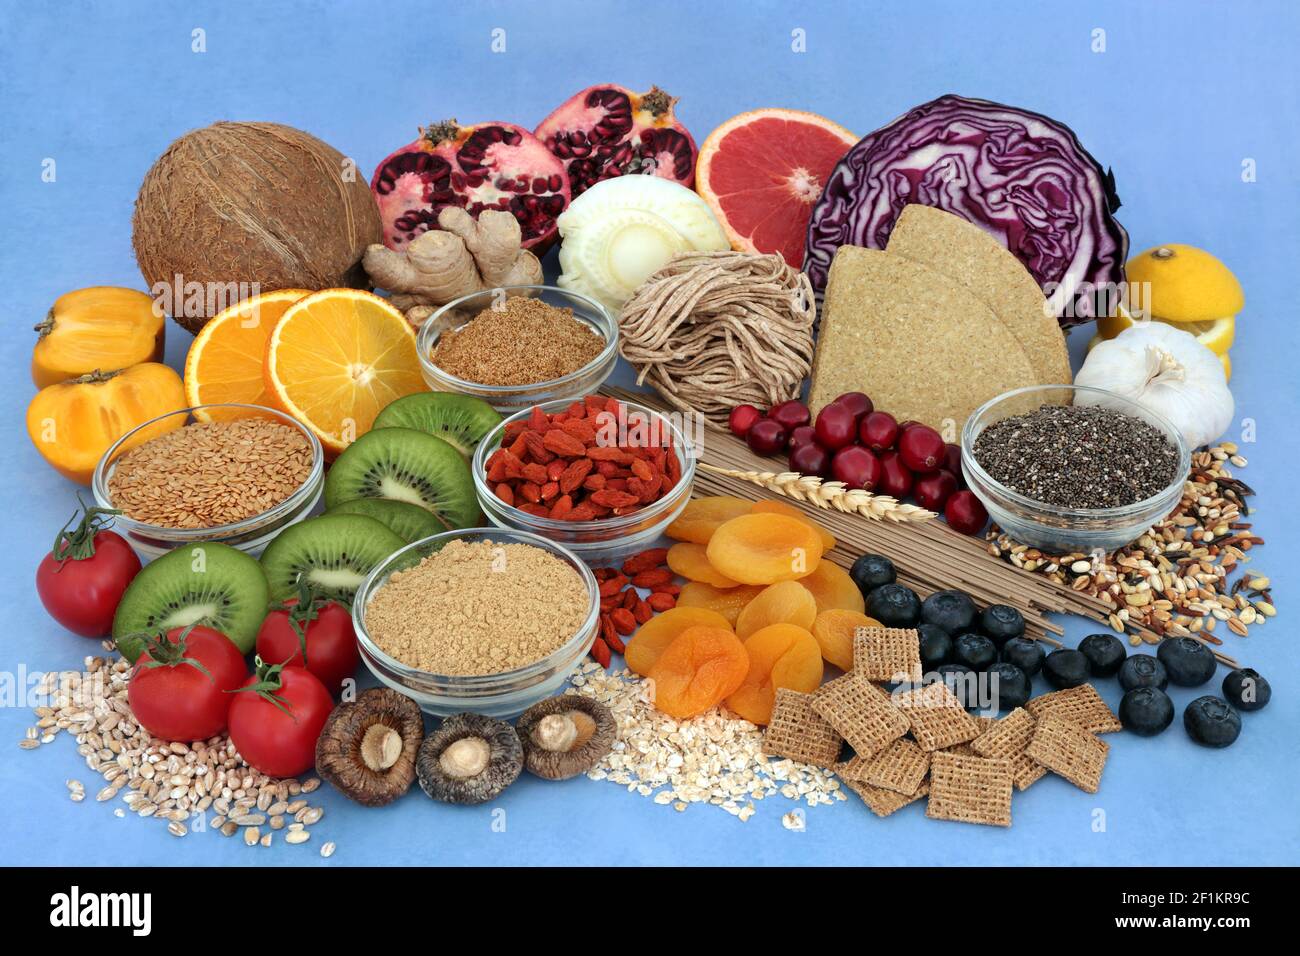 Alimenti sani per una dieta ad alta fibra con alimenti ad alto contenuto proteico, omega 3, vitamine, minerali, antiossidanti, antocianine e licopene. Potenziamento immunitario. Foto Stock